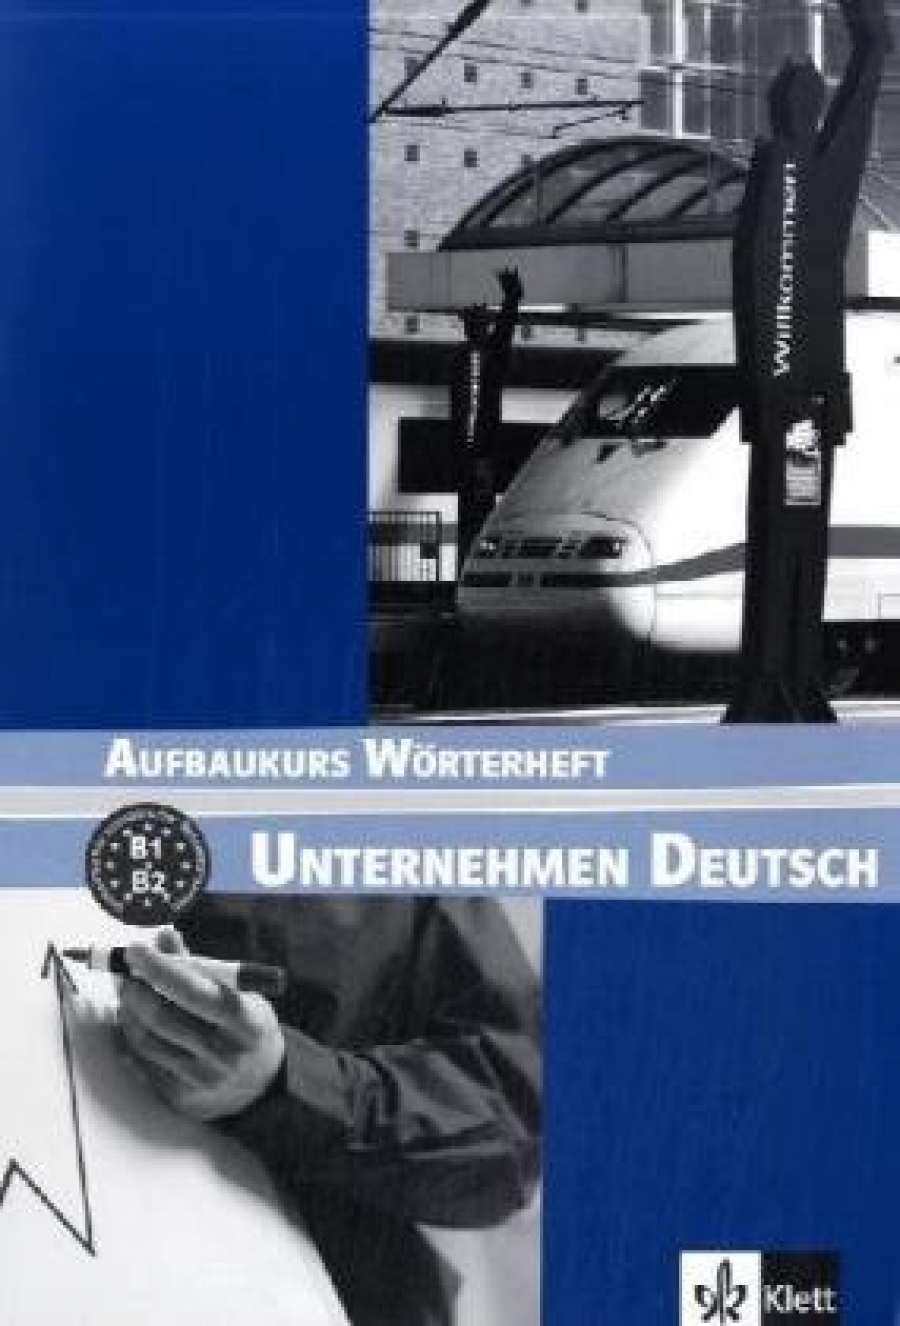 J, N. Becker, Braunert, W. Schlenker Unternehmen Deutsch Aufbaukurs (B1-B2) Worterheft 